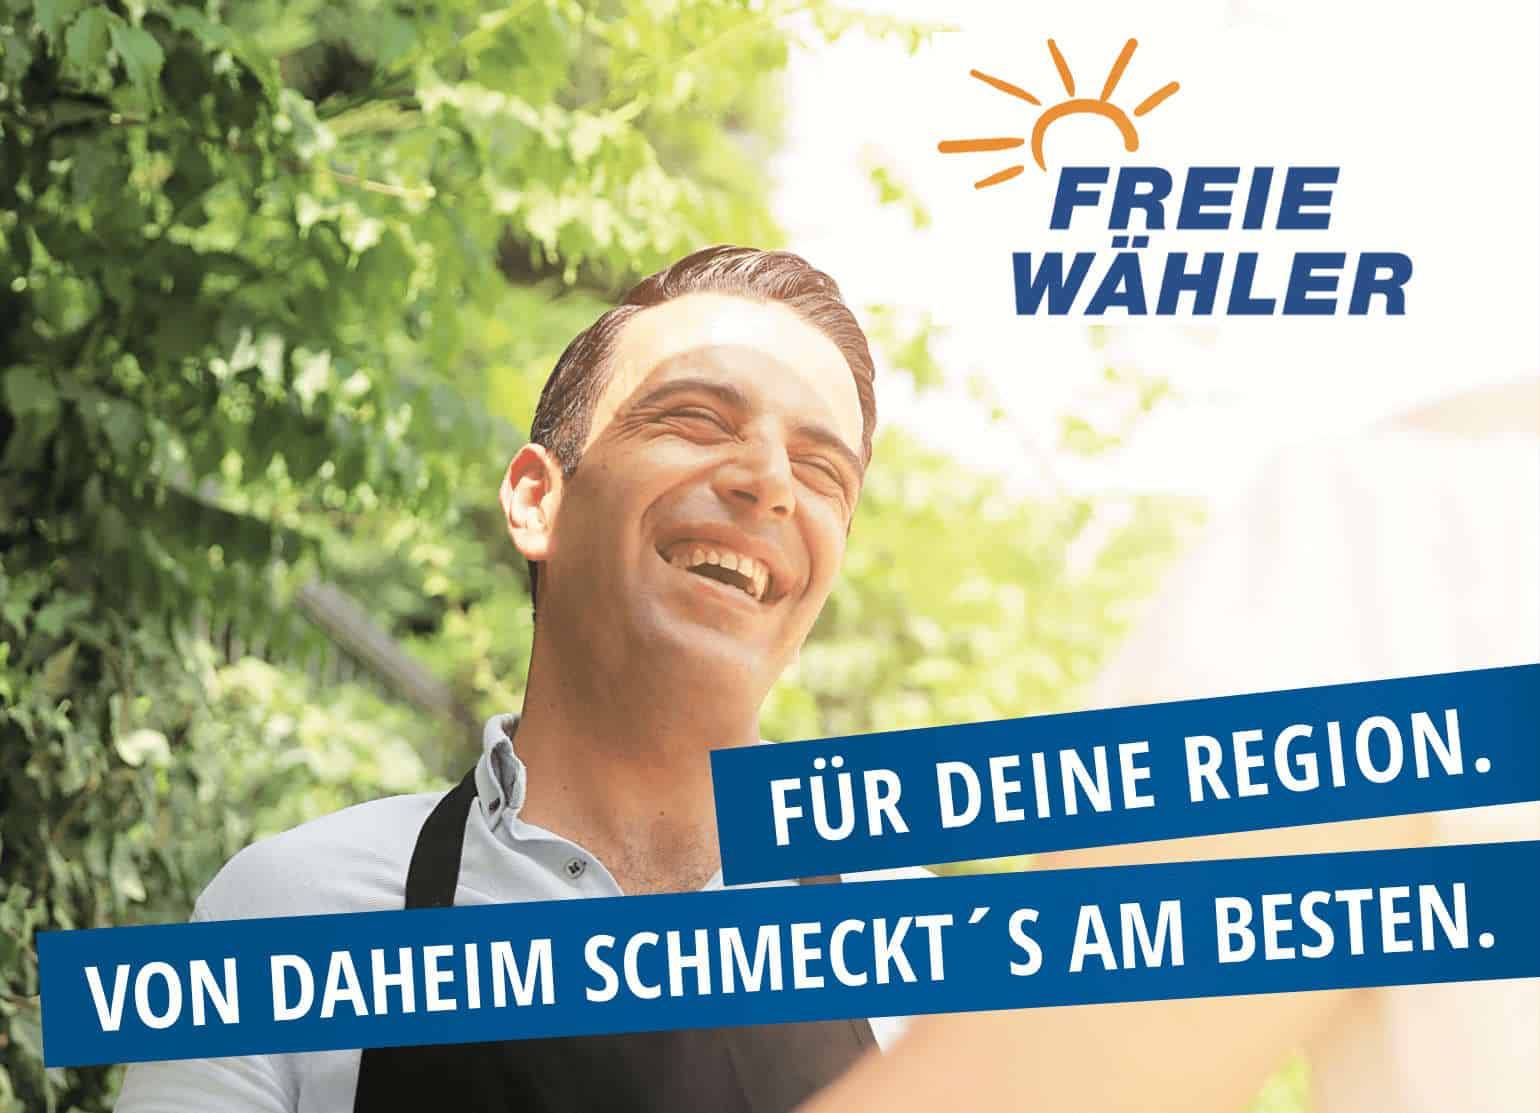 Lachender Mann, Logo der Freien Wähler und der Slogan: Für deine Region - von daheim schmeckts am Besten